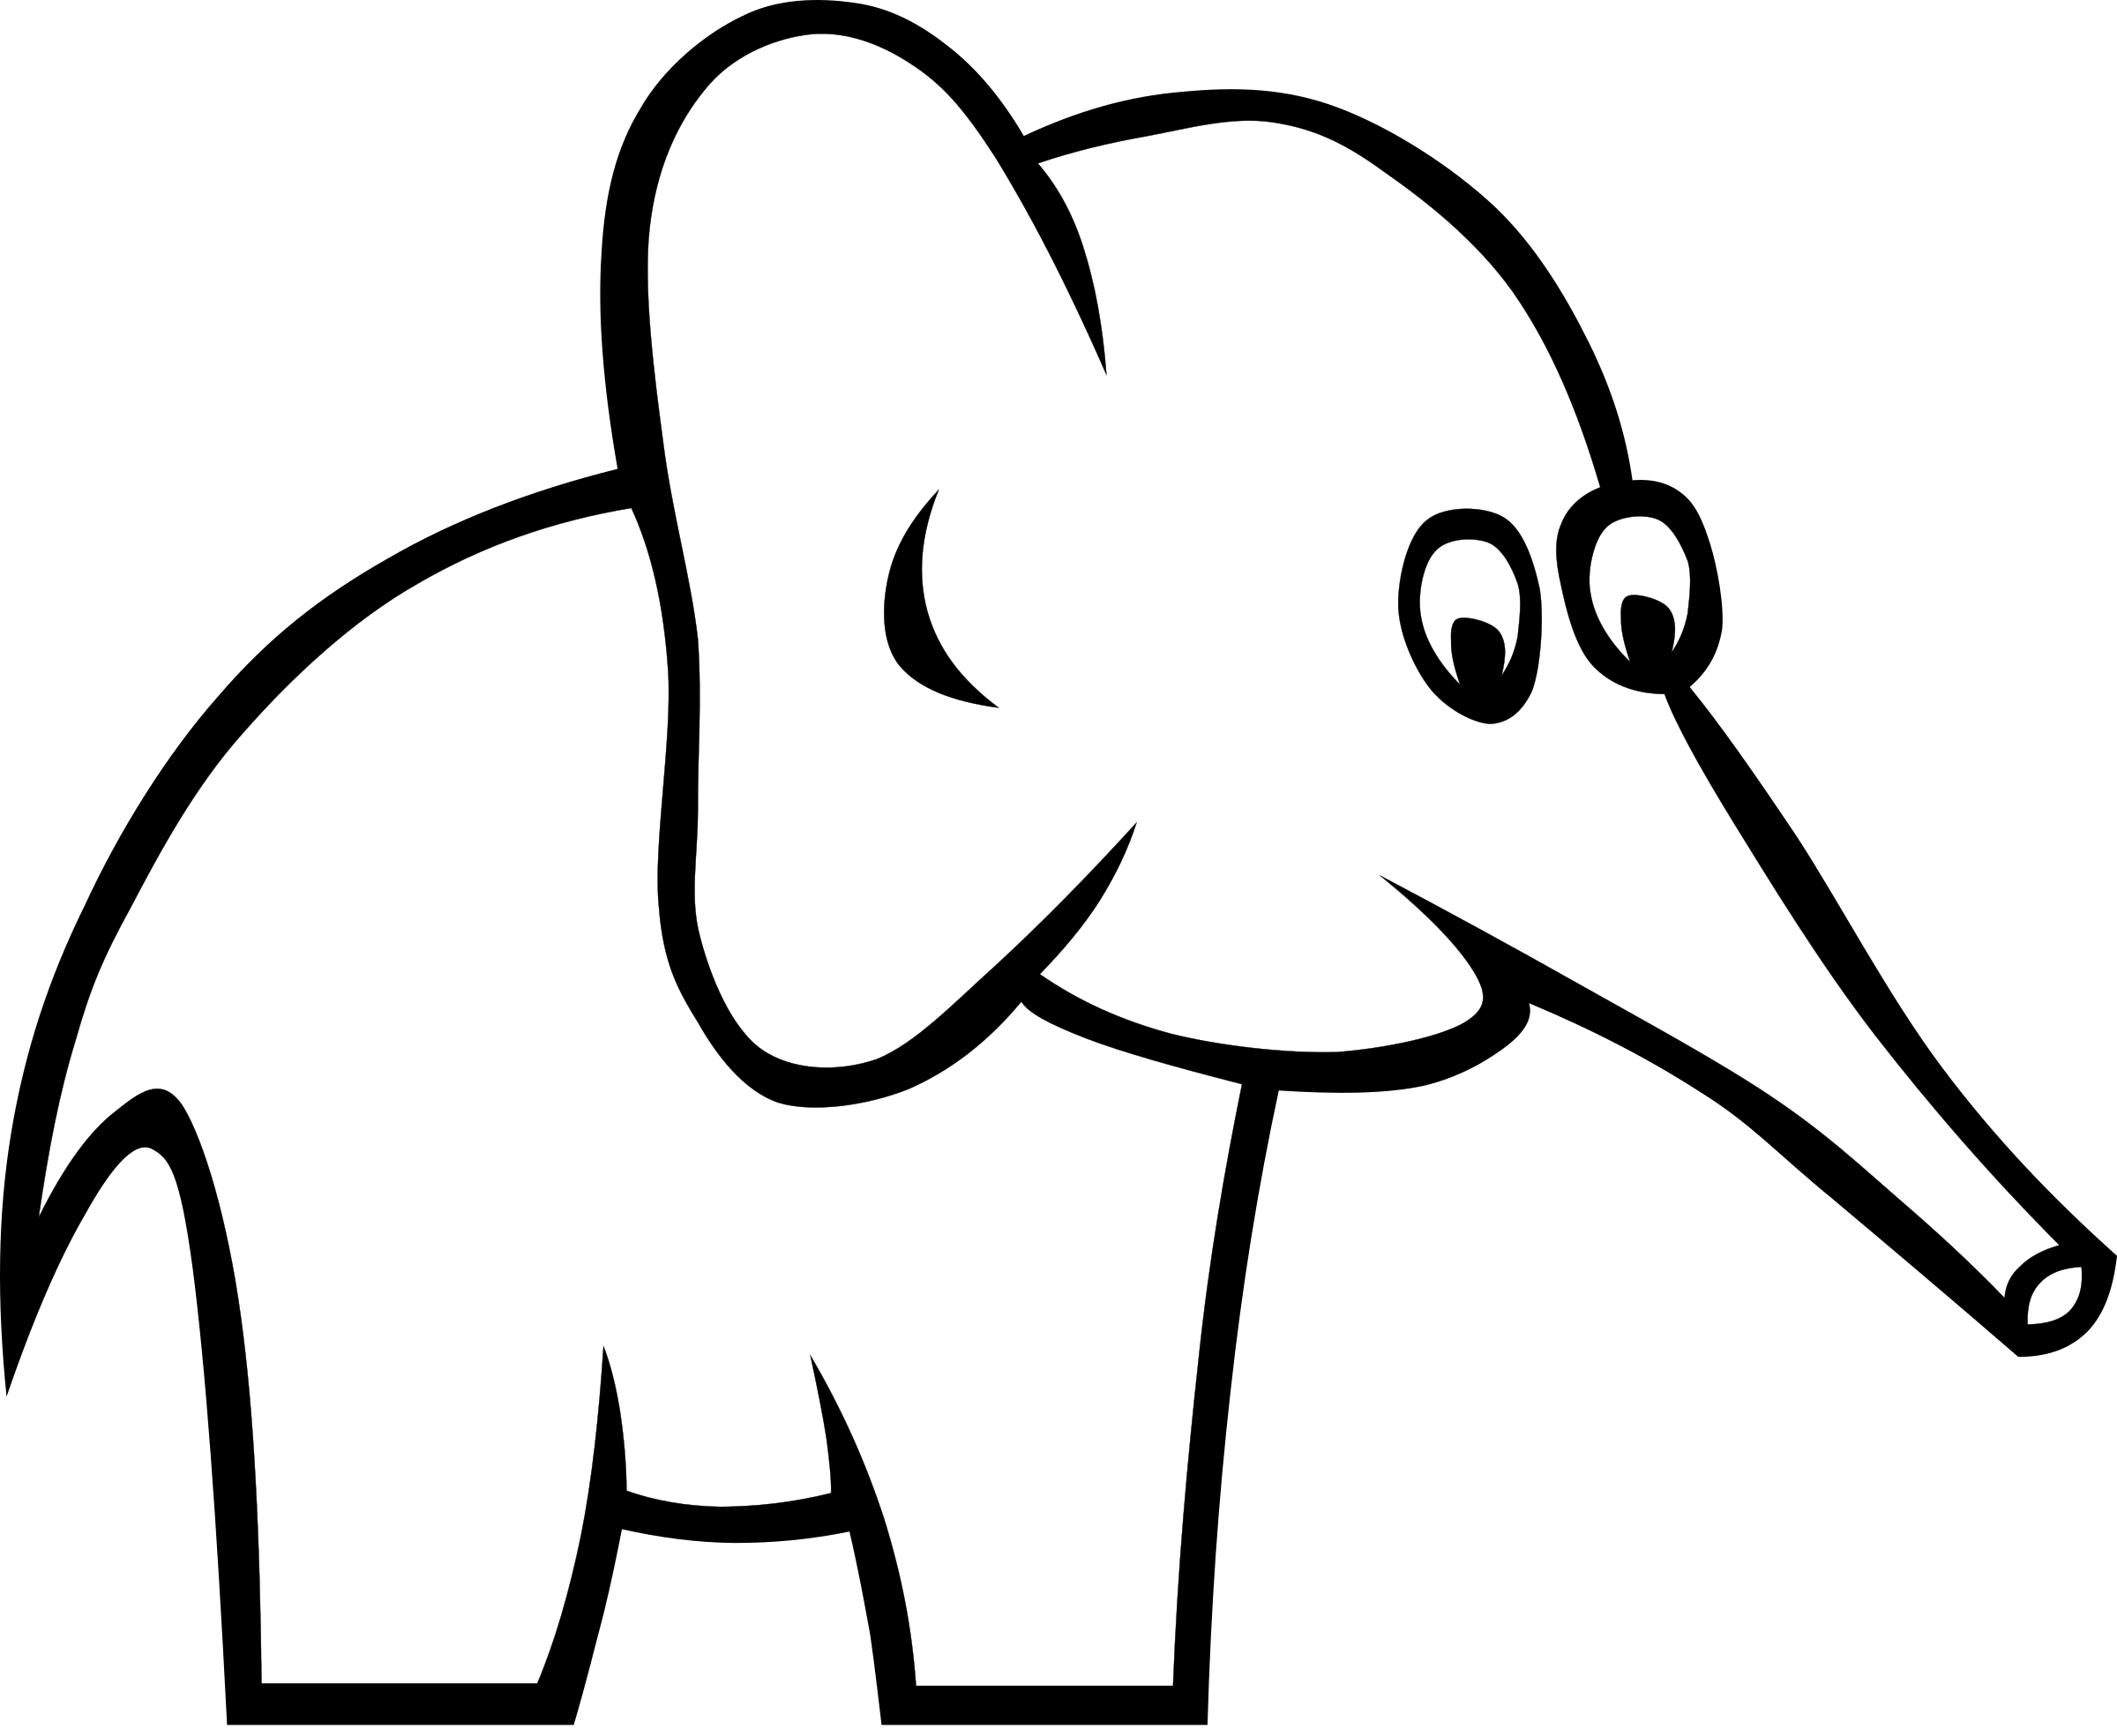 Download Elephants clipart pair, Elephants pair Transparent FREE ...